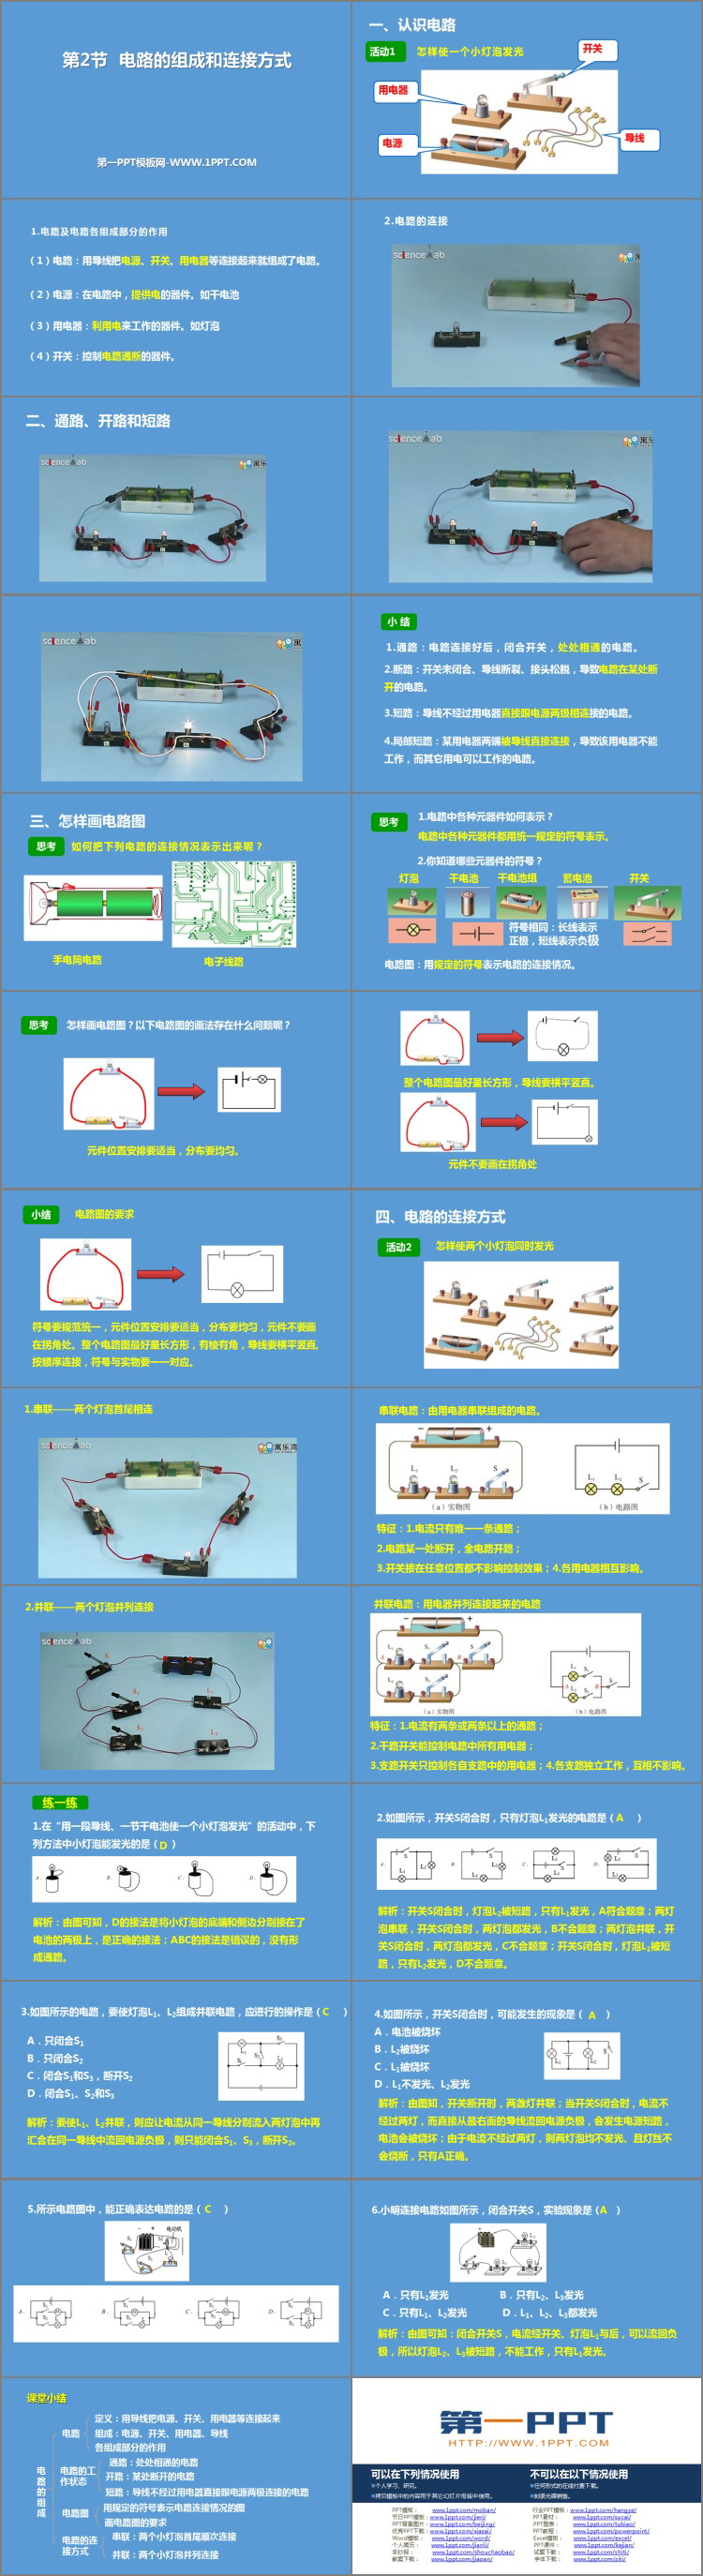 《电路的组成和连接方式》探究简单电路PPT下载-预览图02